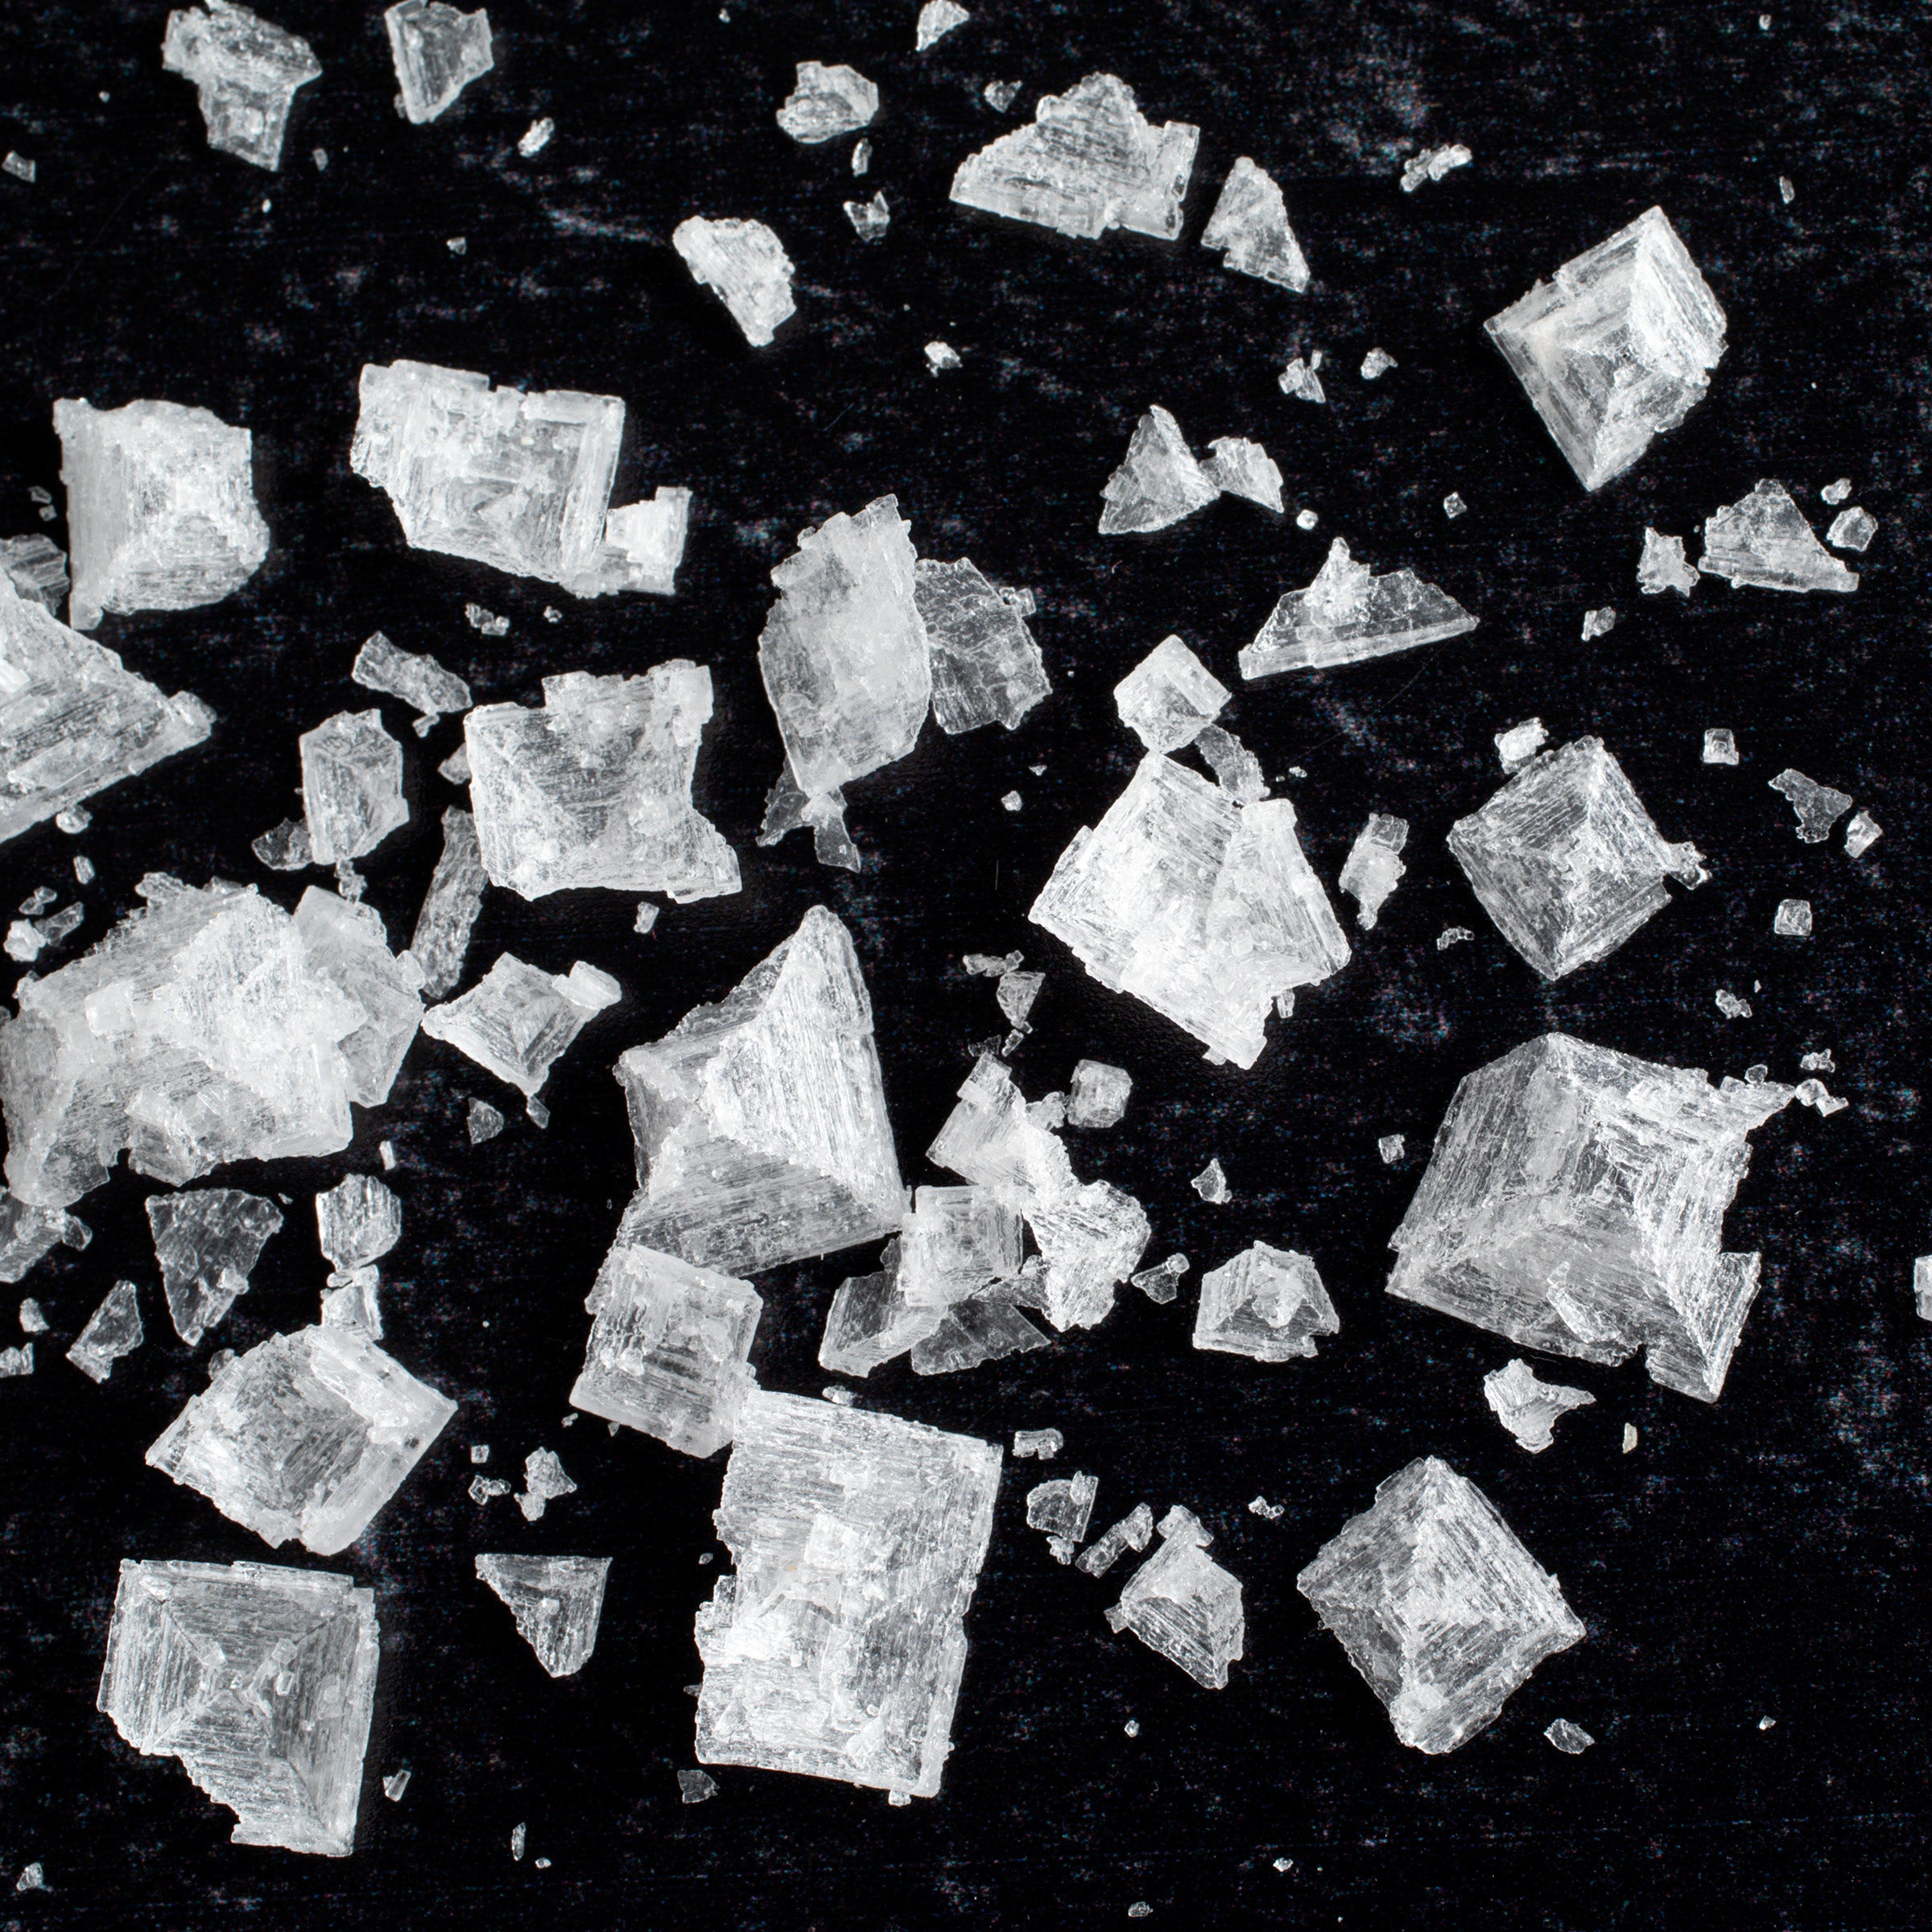 Maldon Sea Salt - Salt Table